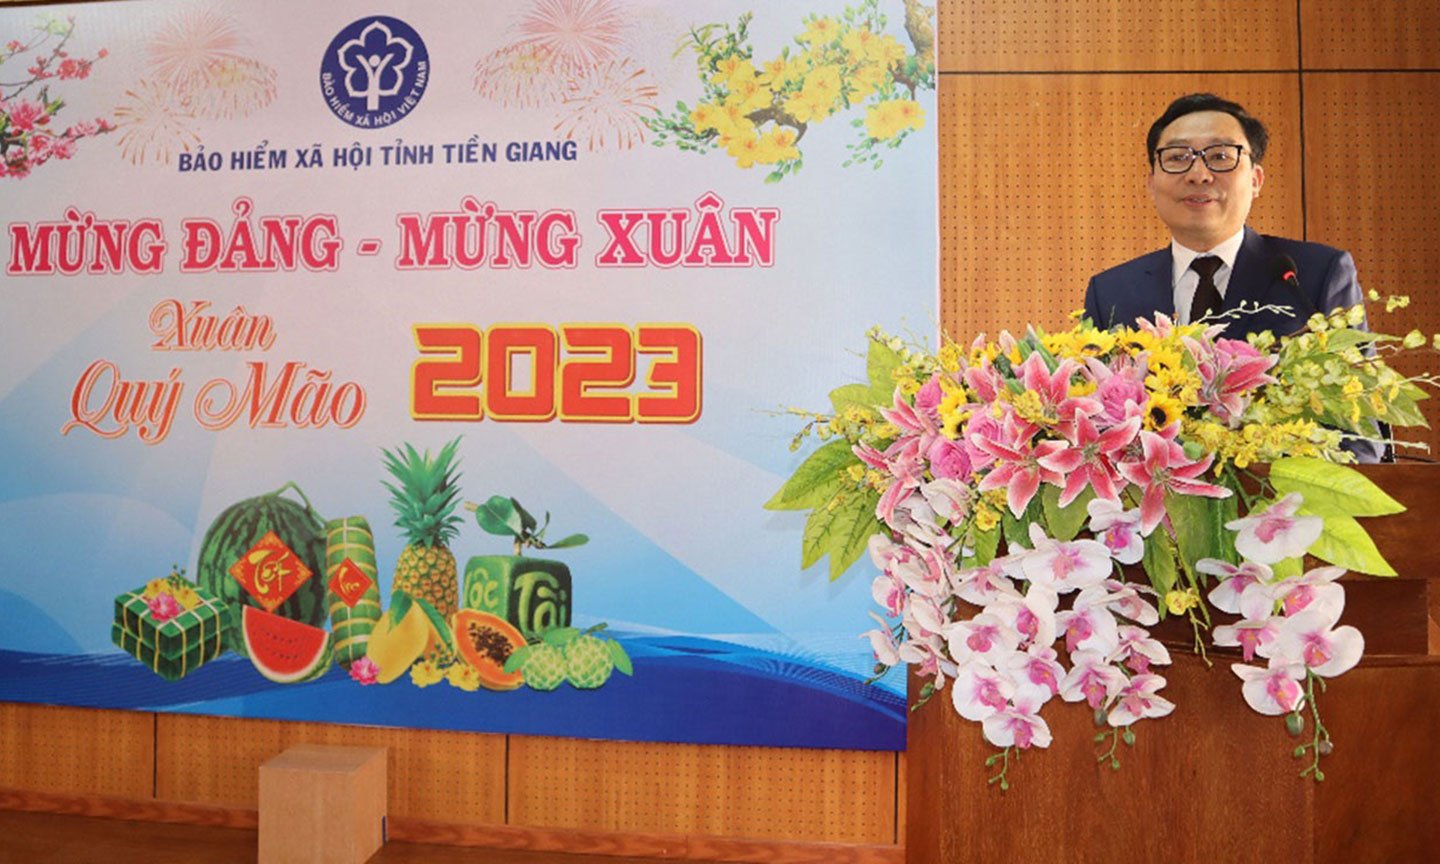 Đồng chí Võ Khánh Bình, Bí thư Đảng ủy, Giám đốc BHXH tỉnh chỉ đạo các nhiệm vụ cần tập trung thực hiện từ ngày đầu xuân